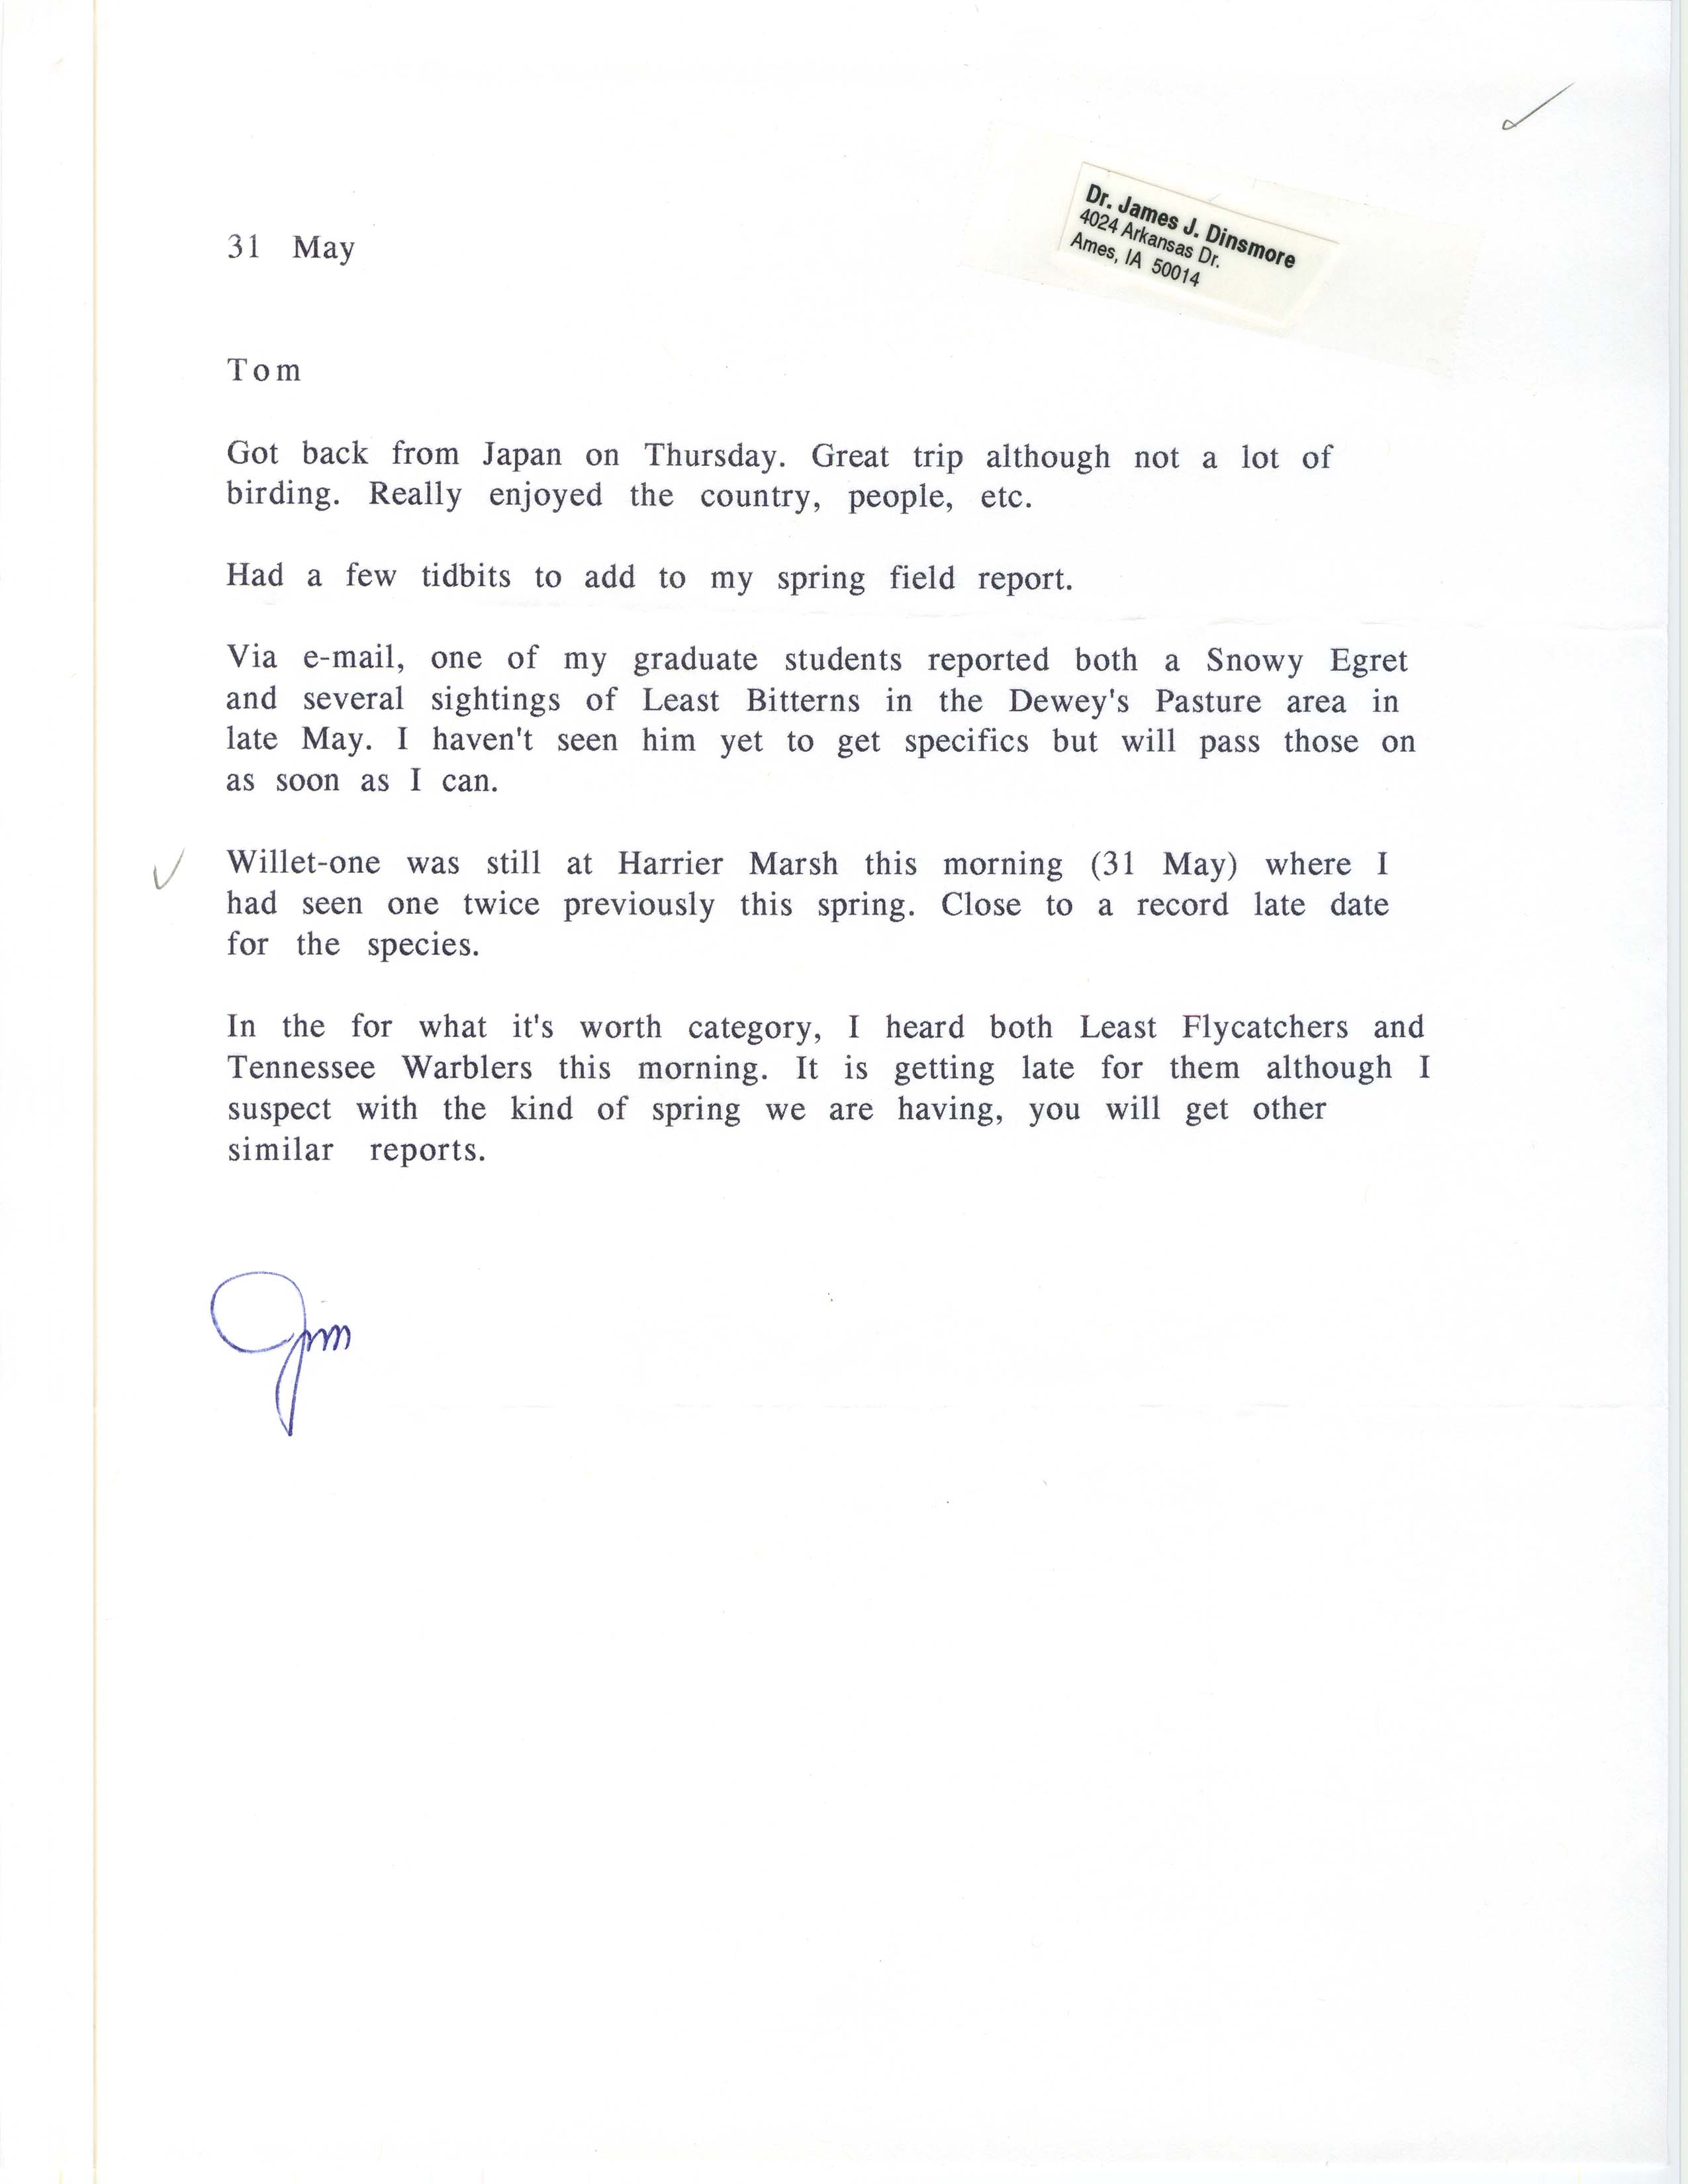 James J. Dinsmore letter to Thomas H. Kent regarding bird sightings, May 31, 1997